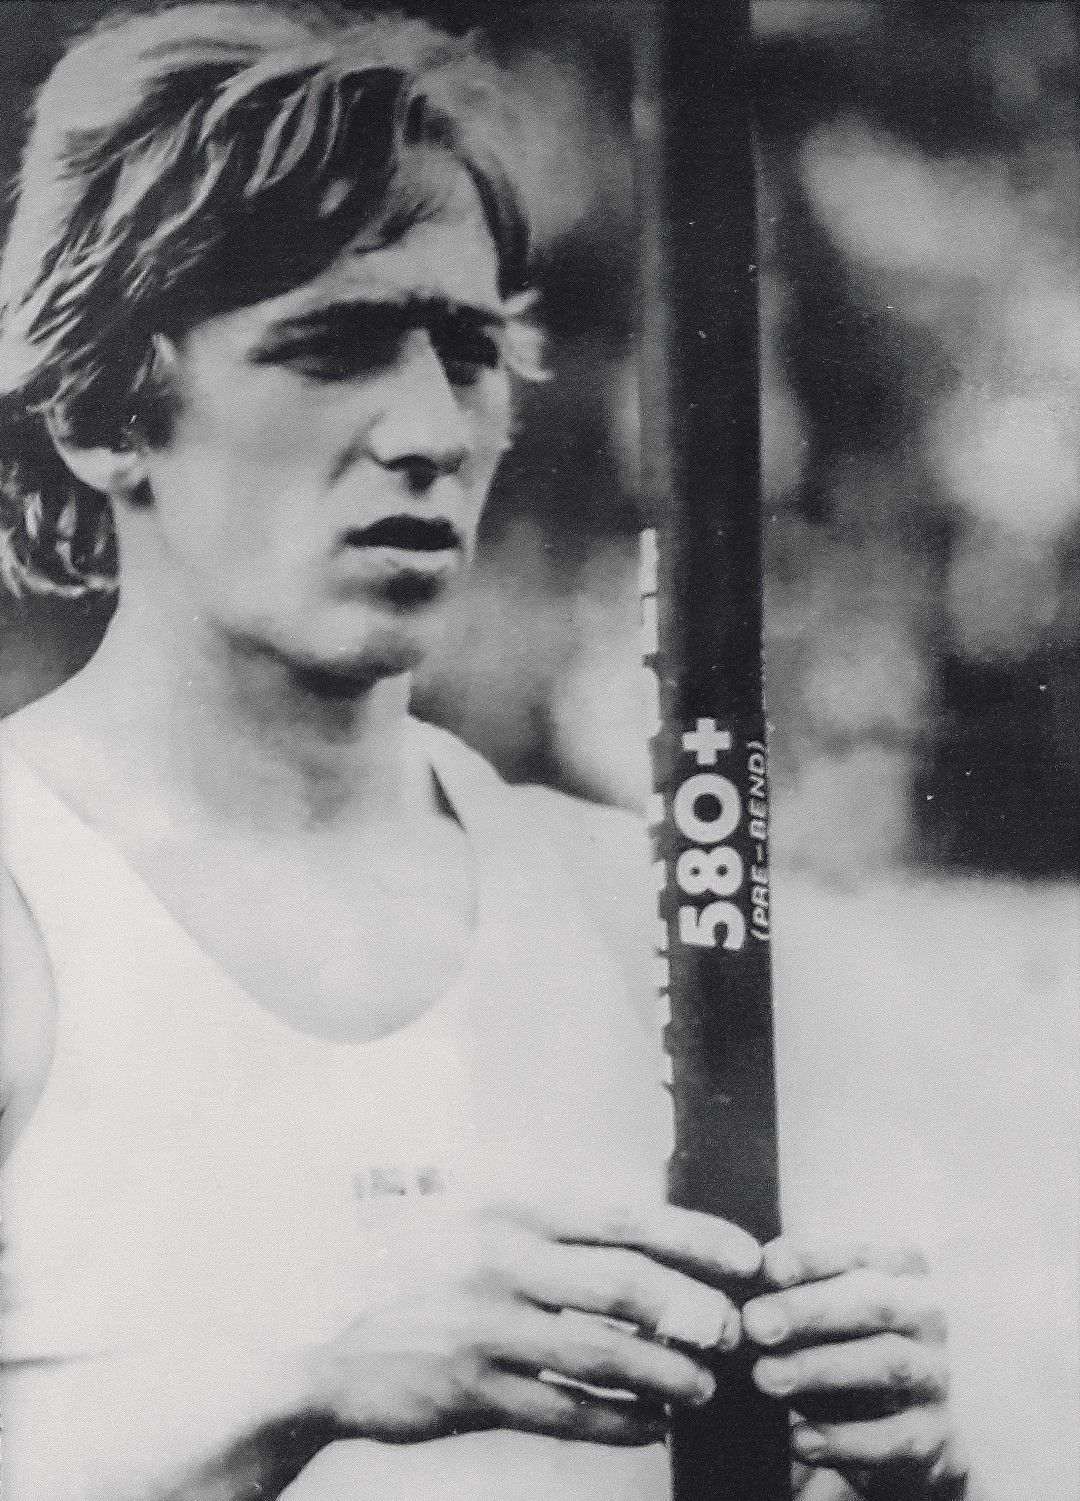 Тадеуш Слюсарски е Олимпийски шампион от Монреал 1976, както   и сребърен медалист от Москва четири години по-късно в   овчарския скок. Една от големите звезди на полския спорт,   пътува във "Форд Скорпио" заедно с Комар и друг голям атлет   на страната - Ярослав Марчек, като и тримата загиват на 17   август 1998 г.